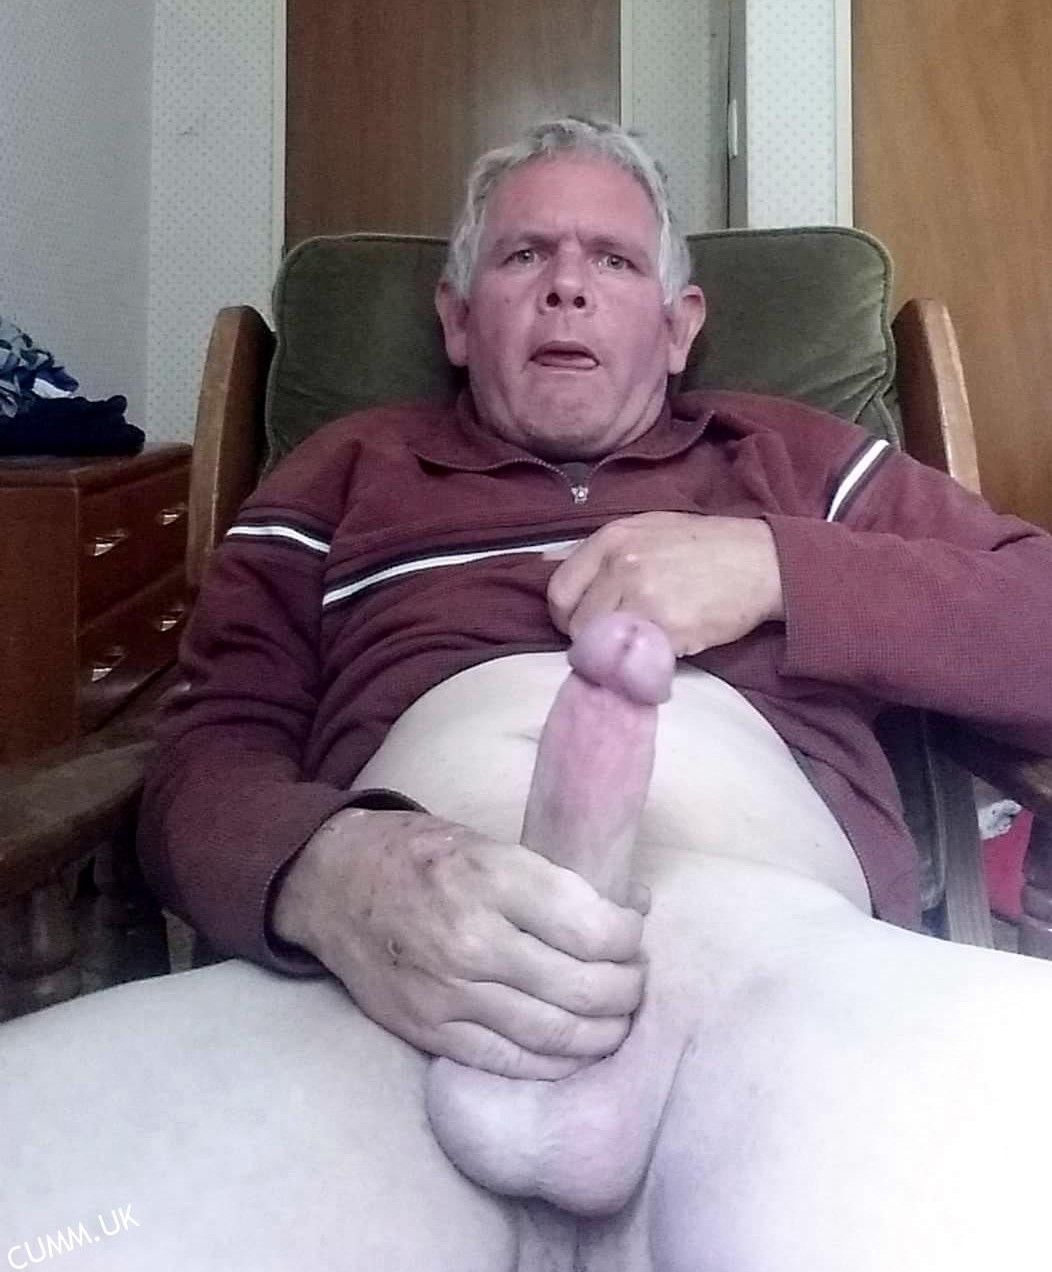 Grandpa penis